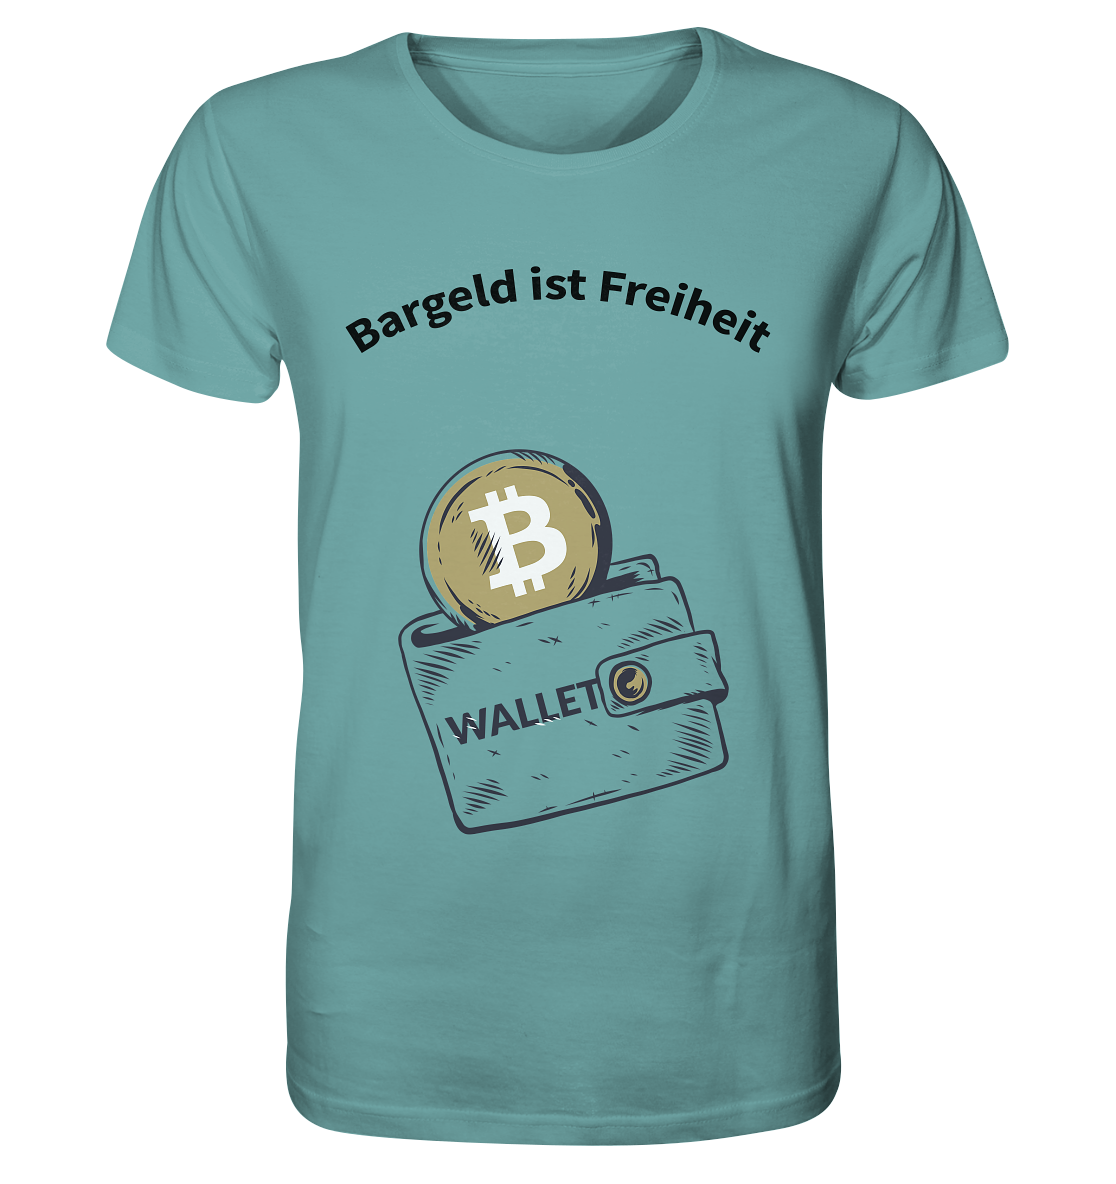 Bargeld ist Freiheit - Organic Shirt